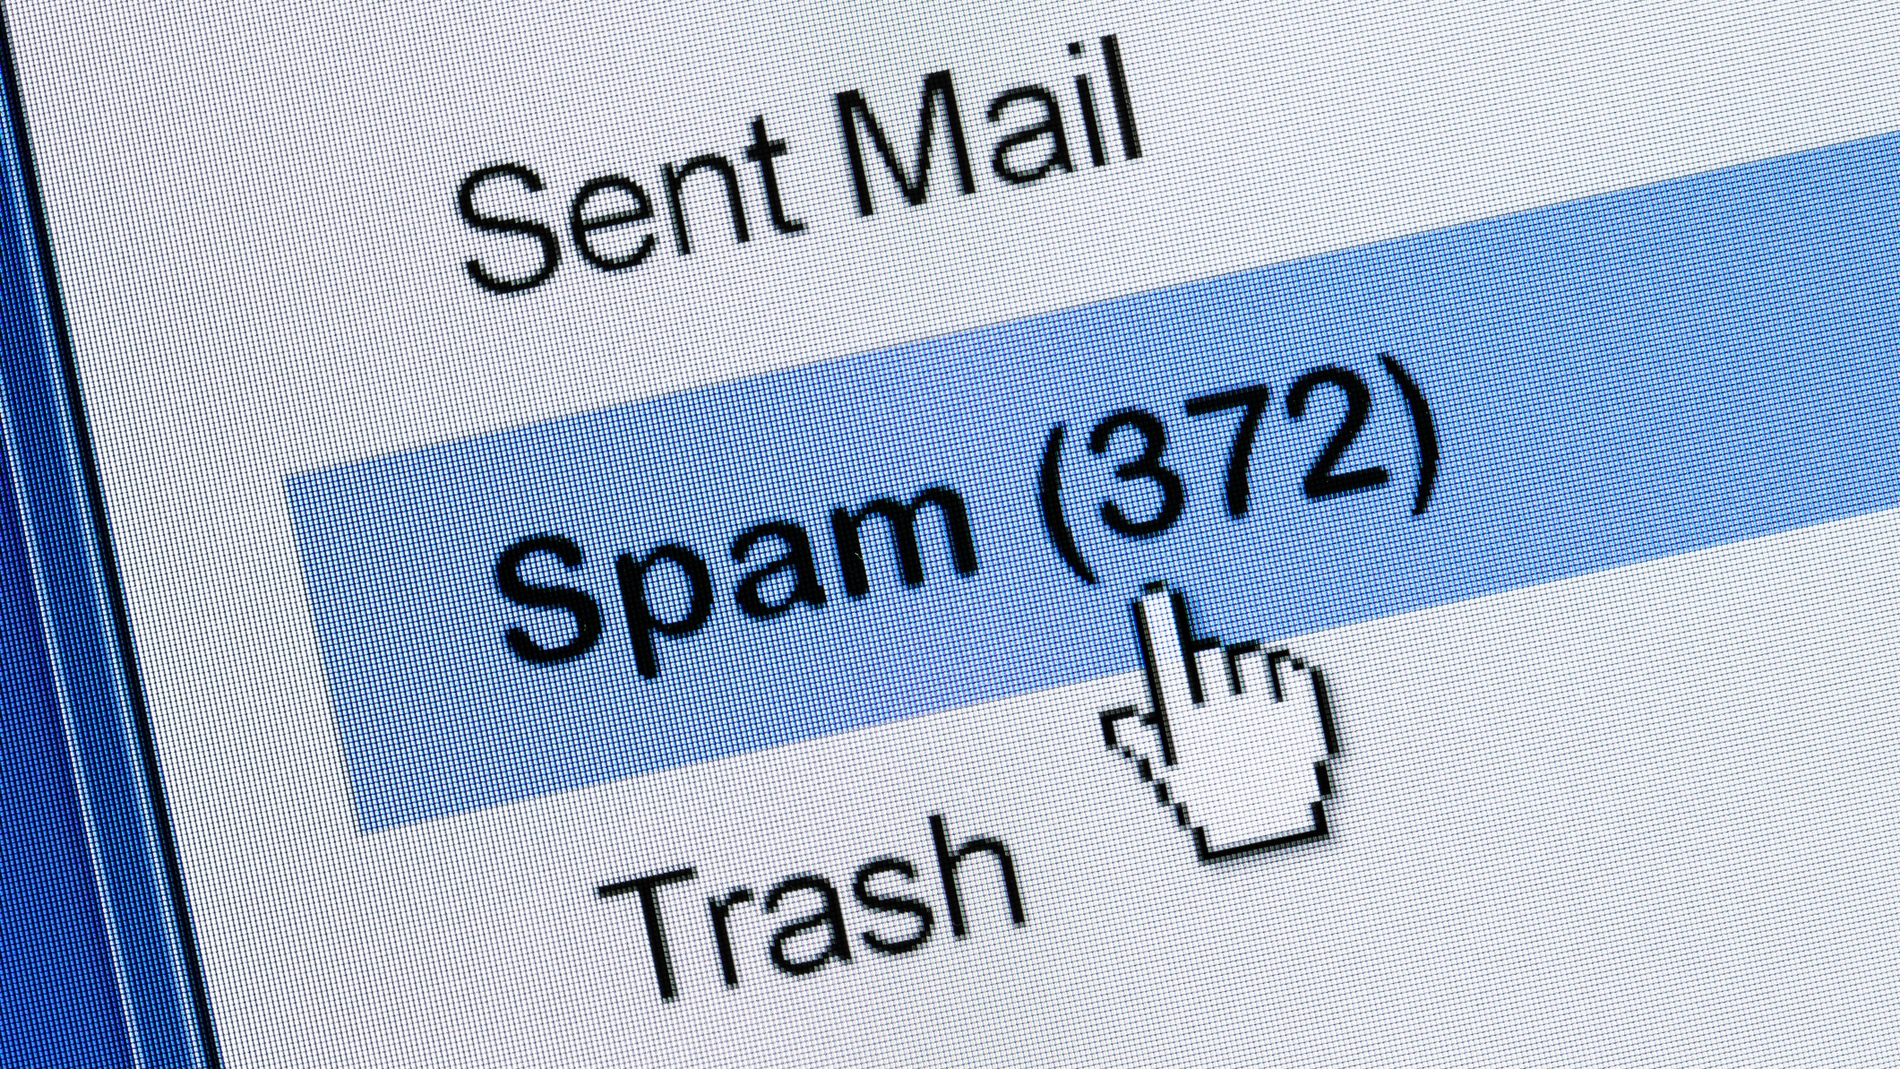 Bandeja de spam en el email